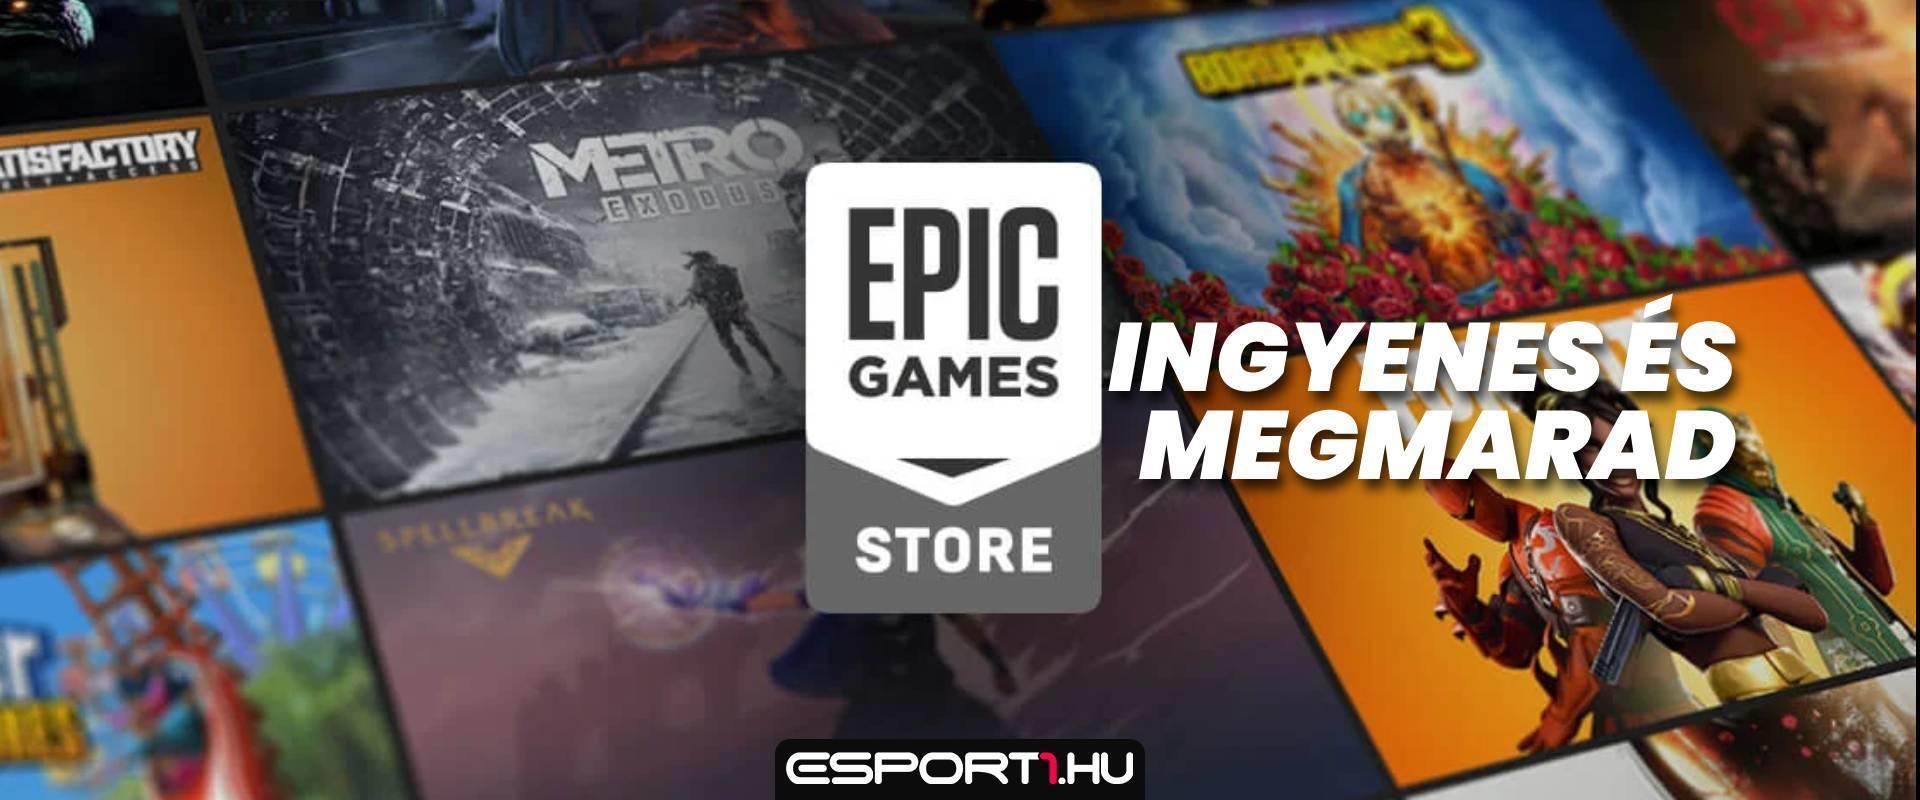 Itt az Epic Games Store legújabb ingyenes játéka